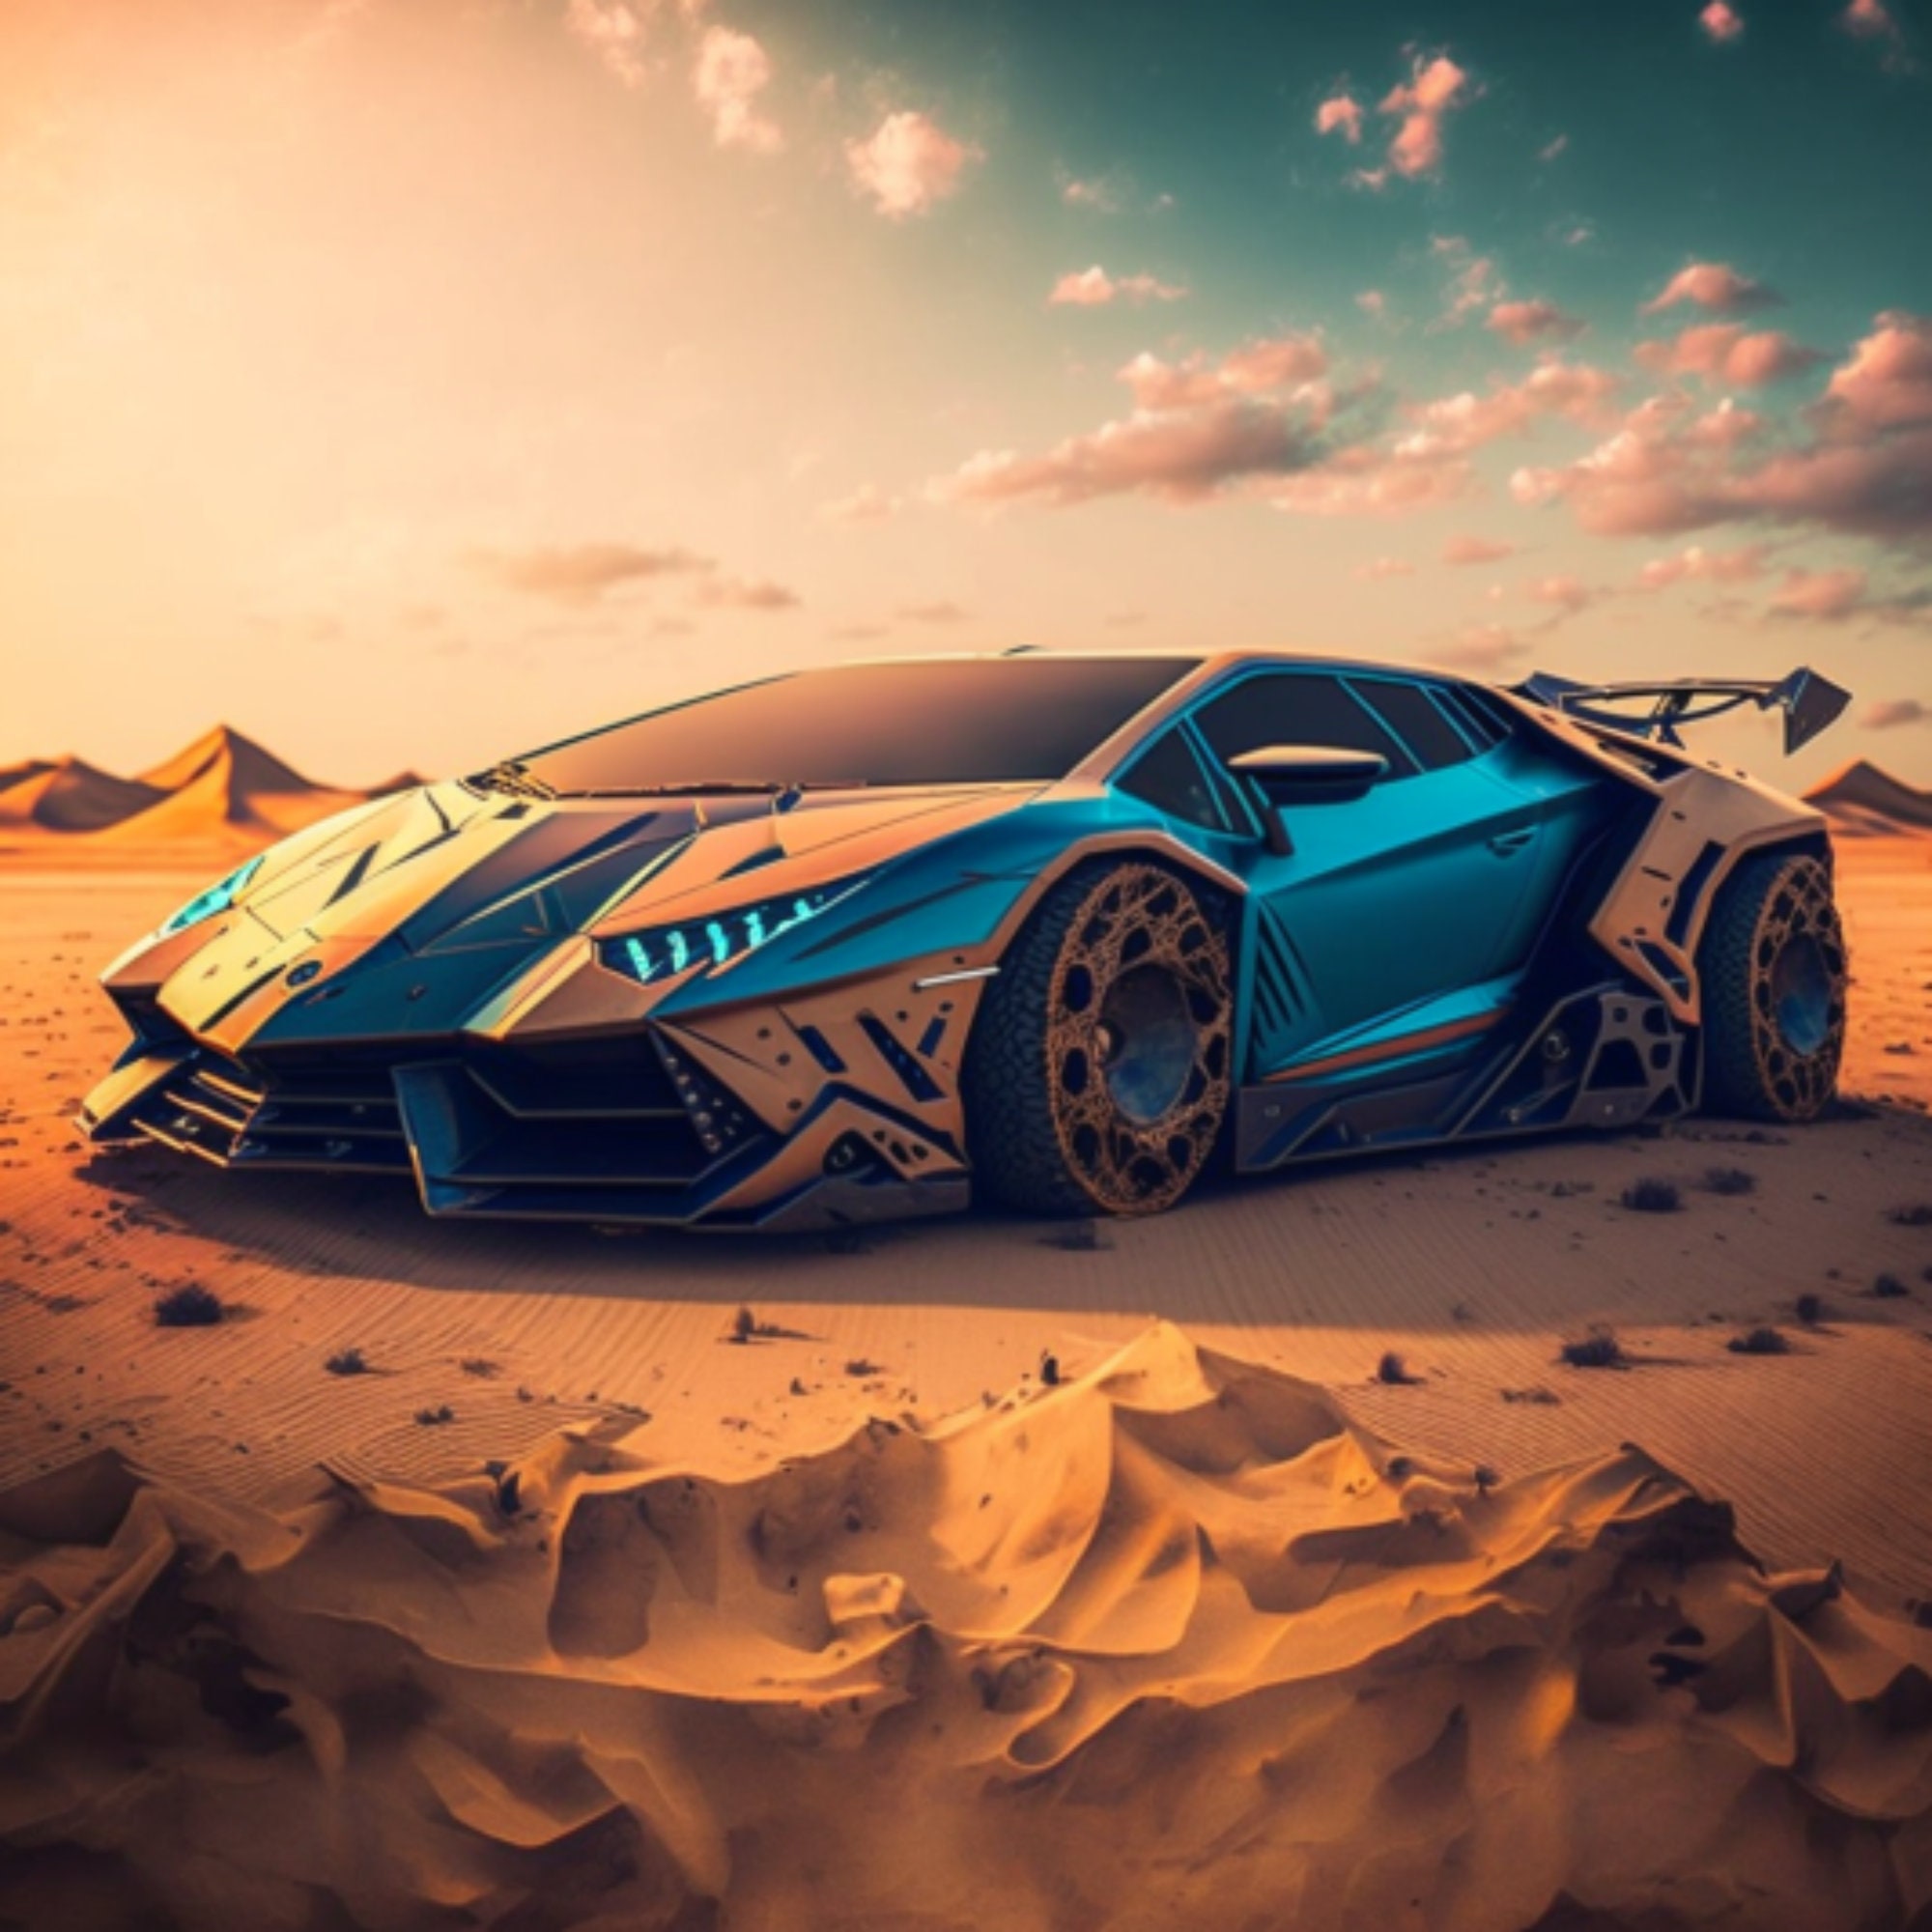 La peinture de cette Lamborghini est du grand art